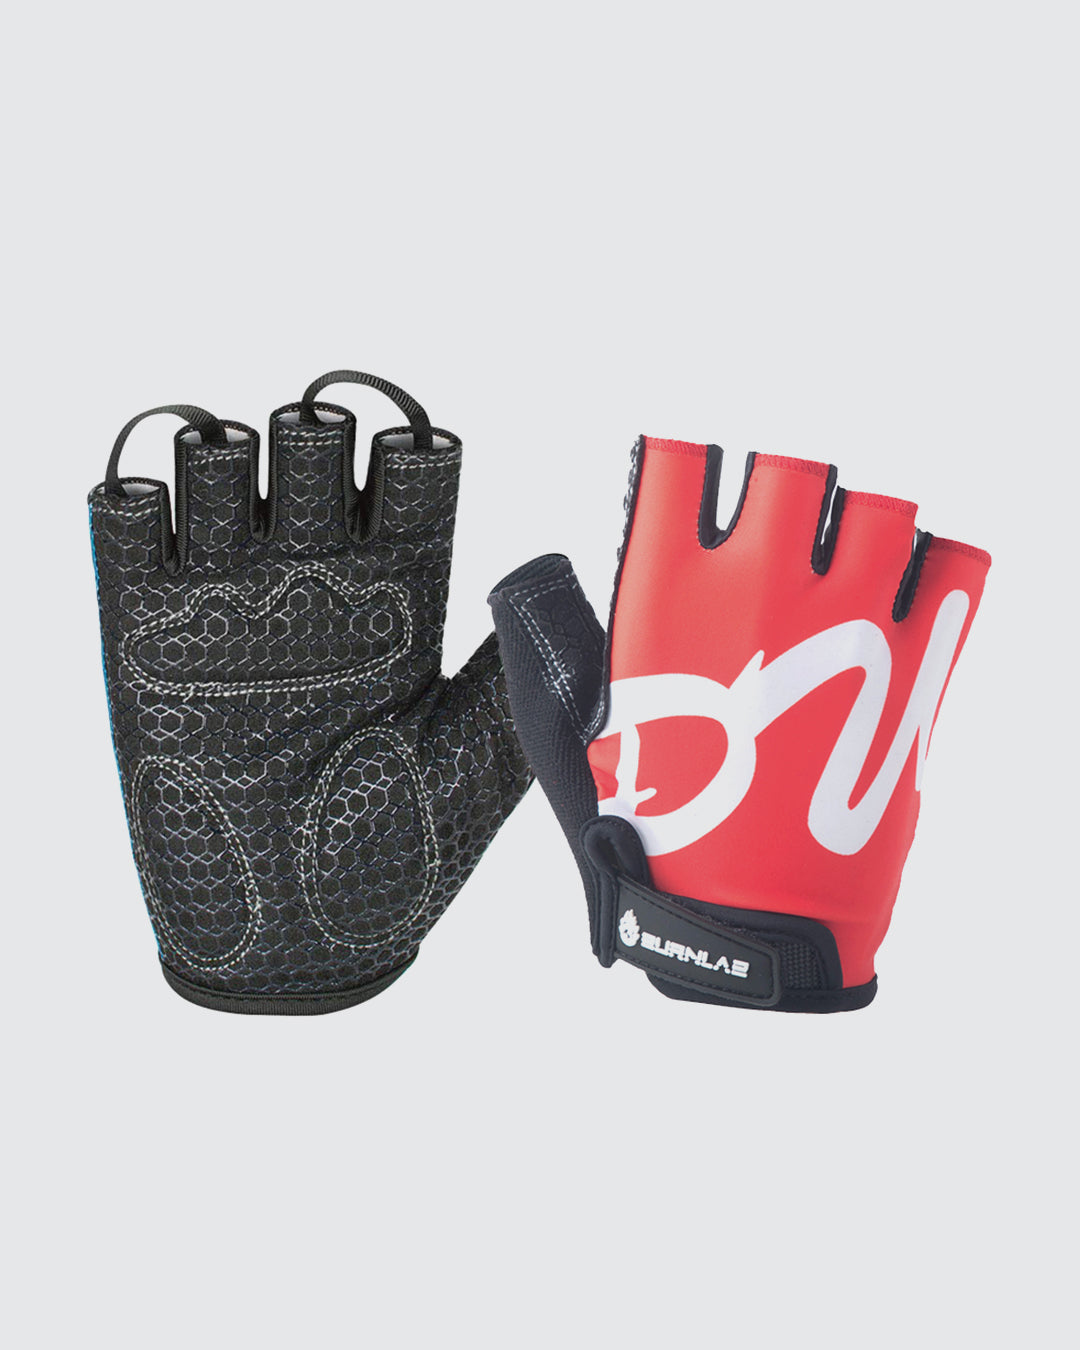 Flex Gym Gloves - Burnlab.Co